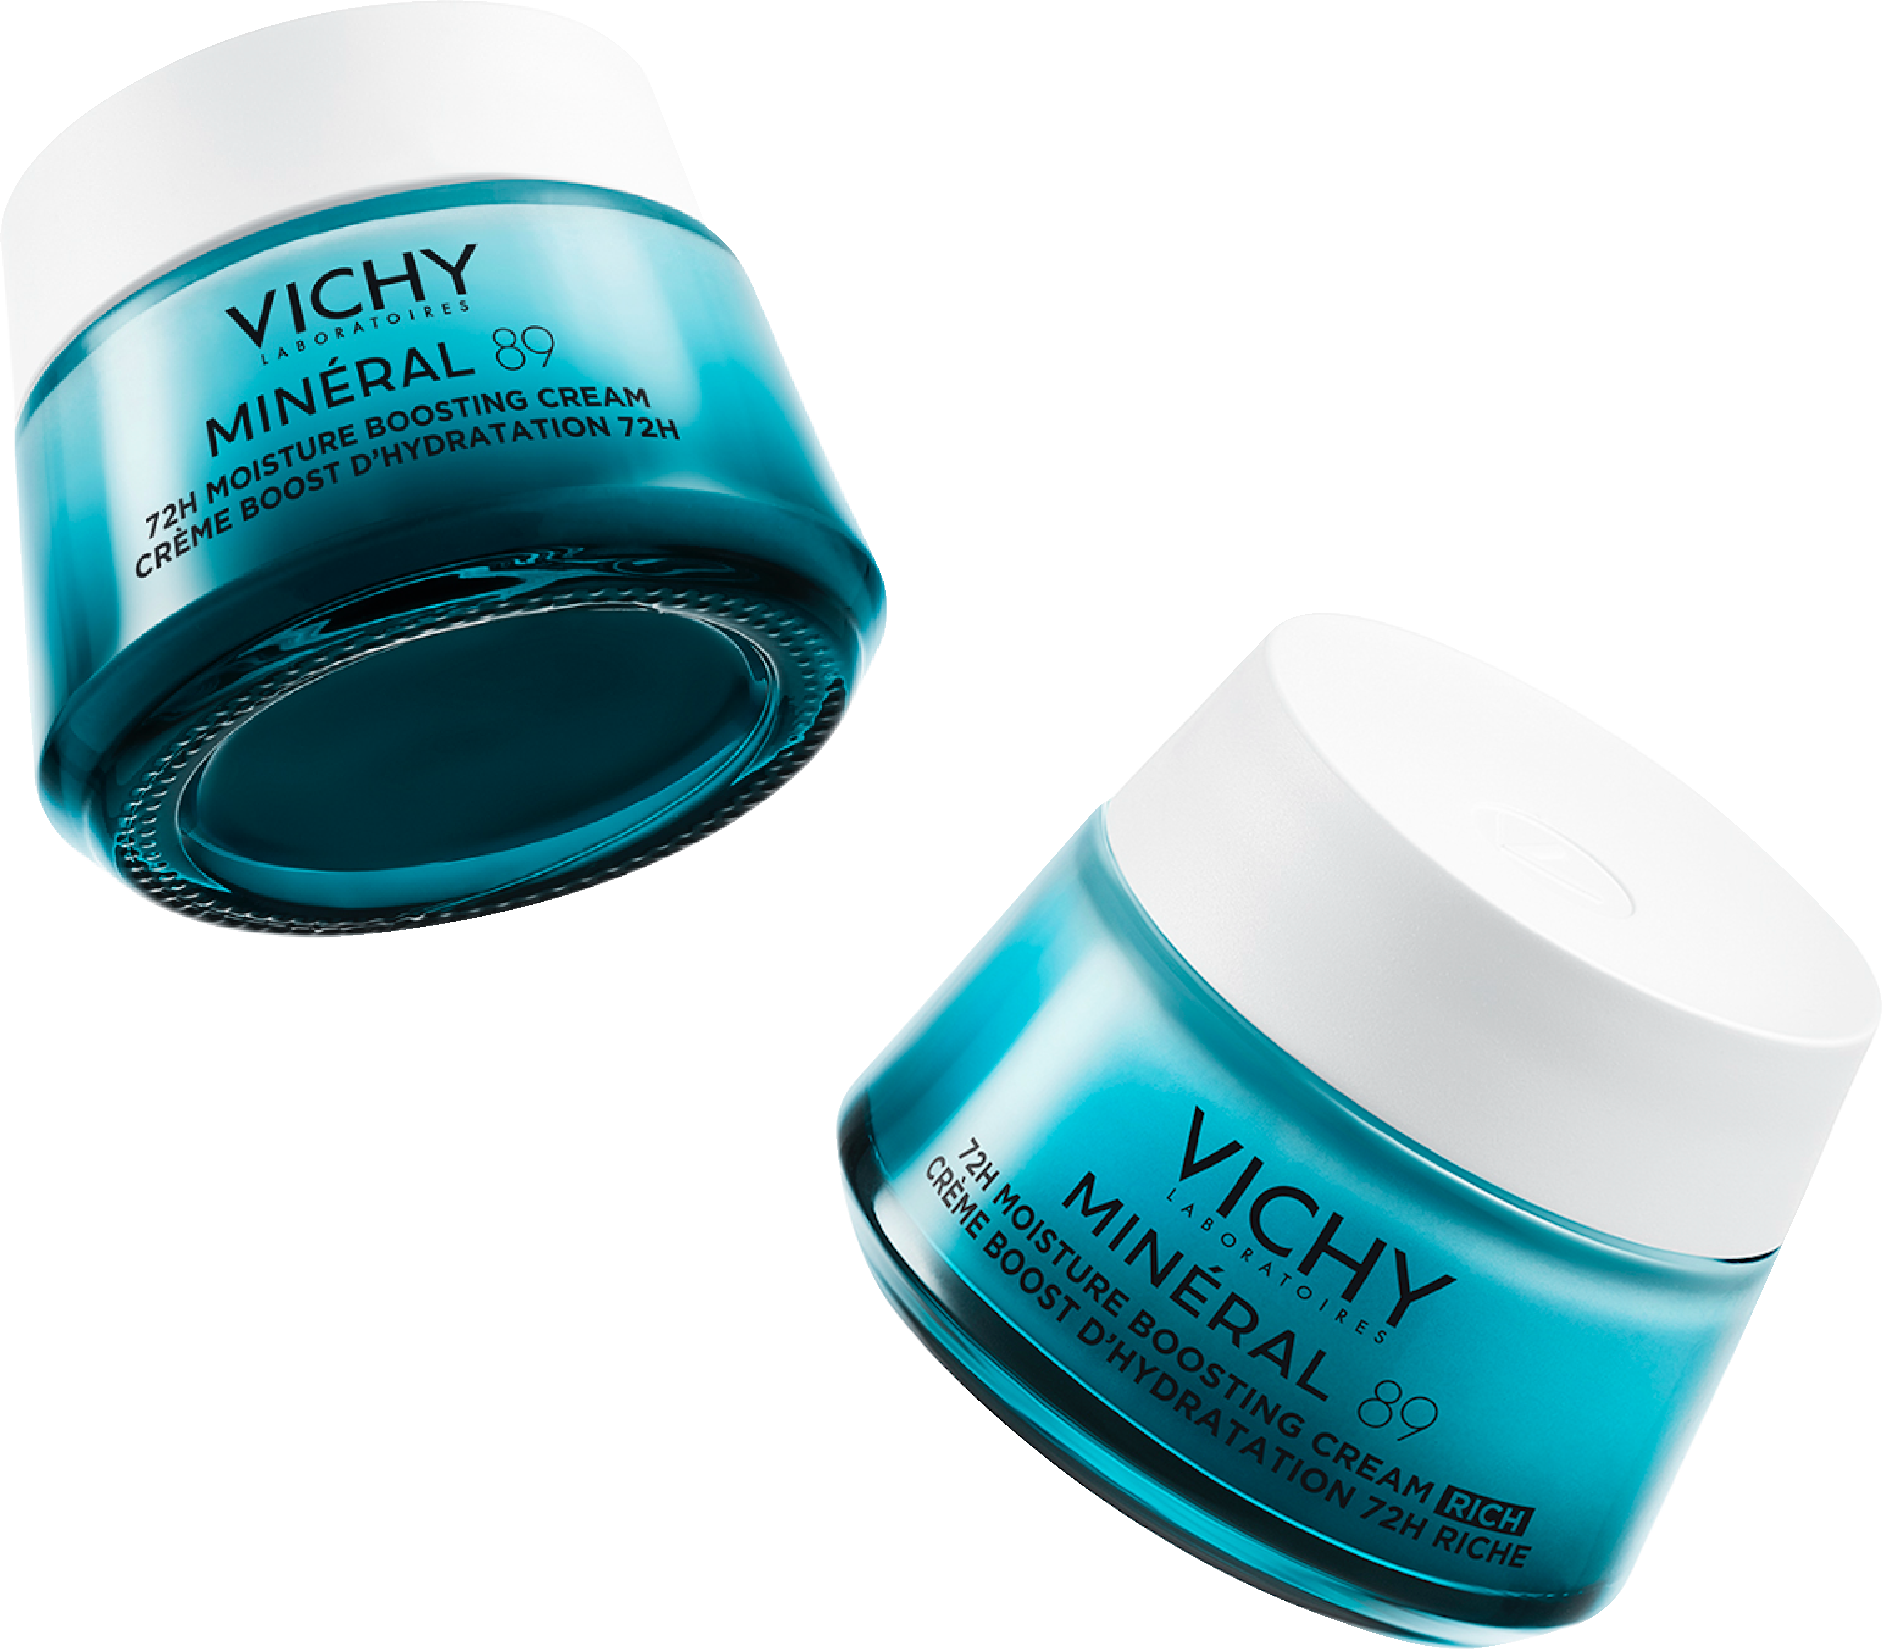 Img 1 Zašto svi pričaju o novim Vichy MINÉRAL 89 proizvodima? Saznali smo, otkrivamo i dajemo vam priliku da ih testirate